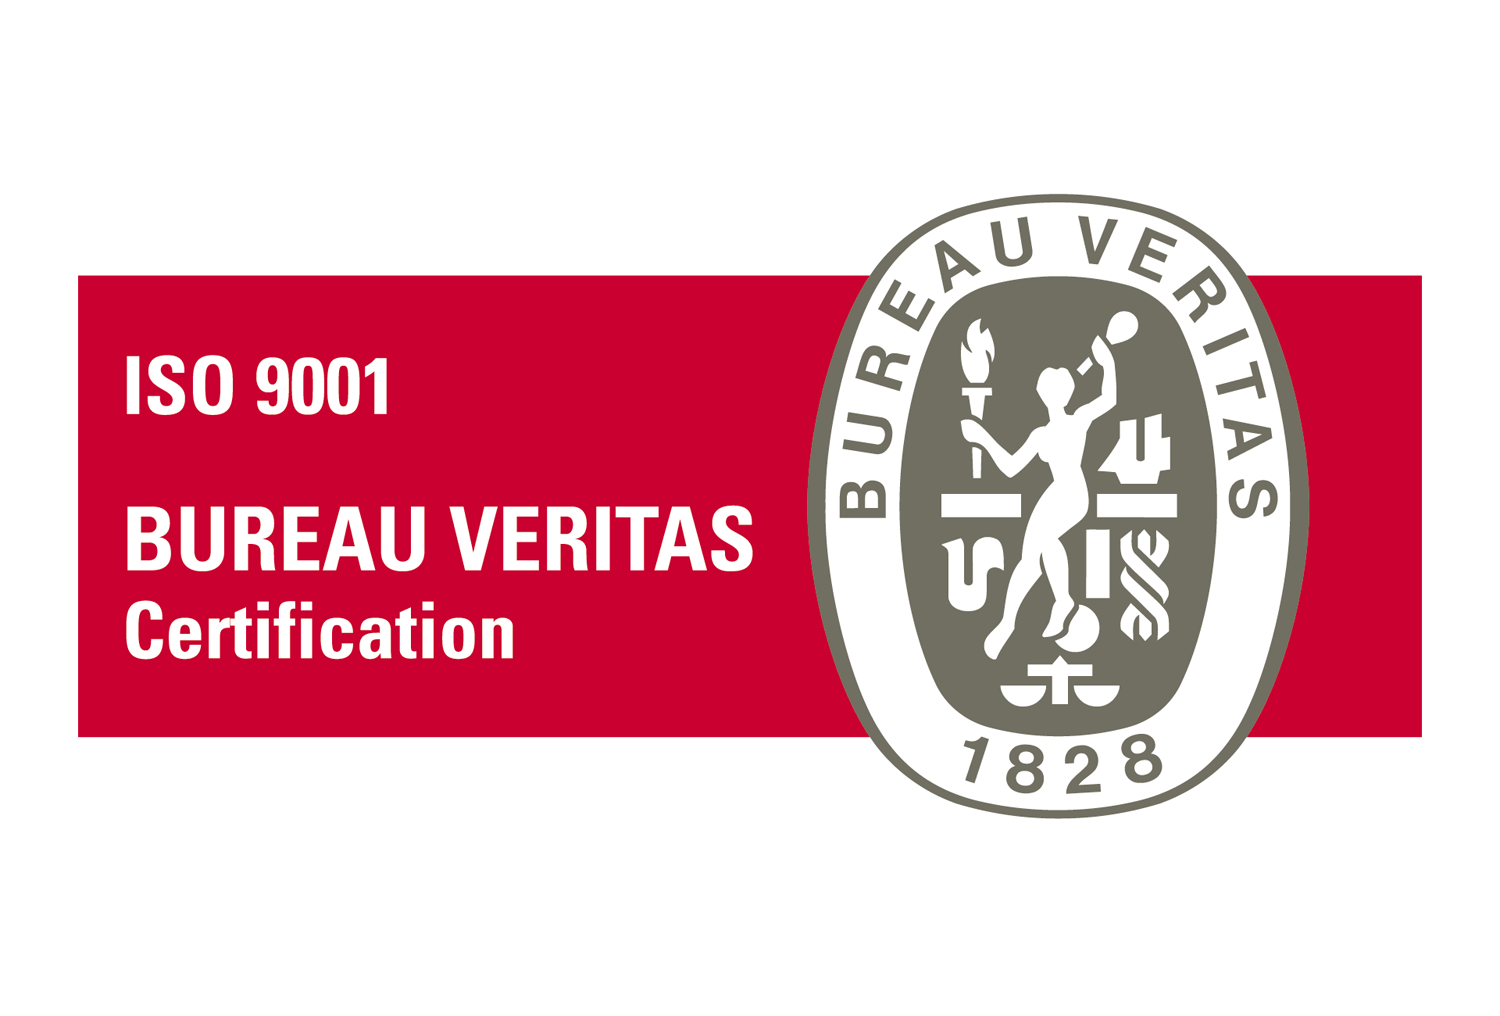 Veritas Logo - Bureau Veritas ISO 9001 logo | Dwglogo